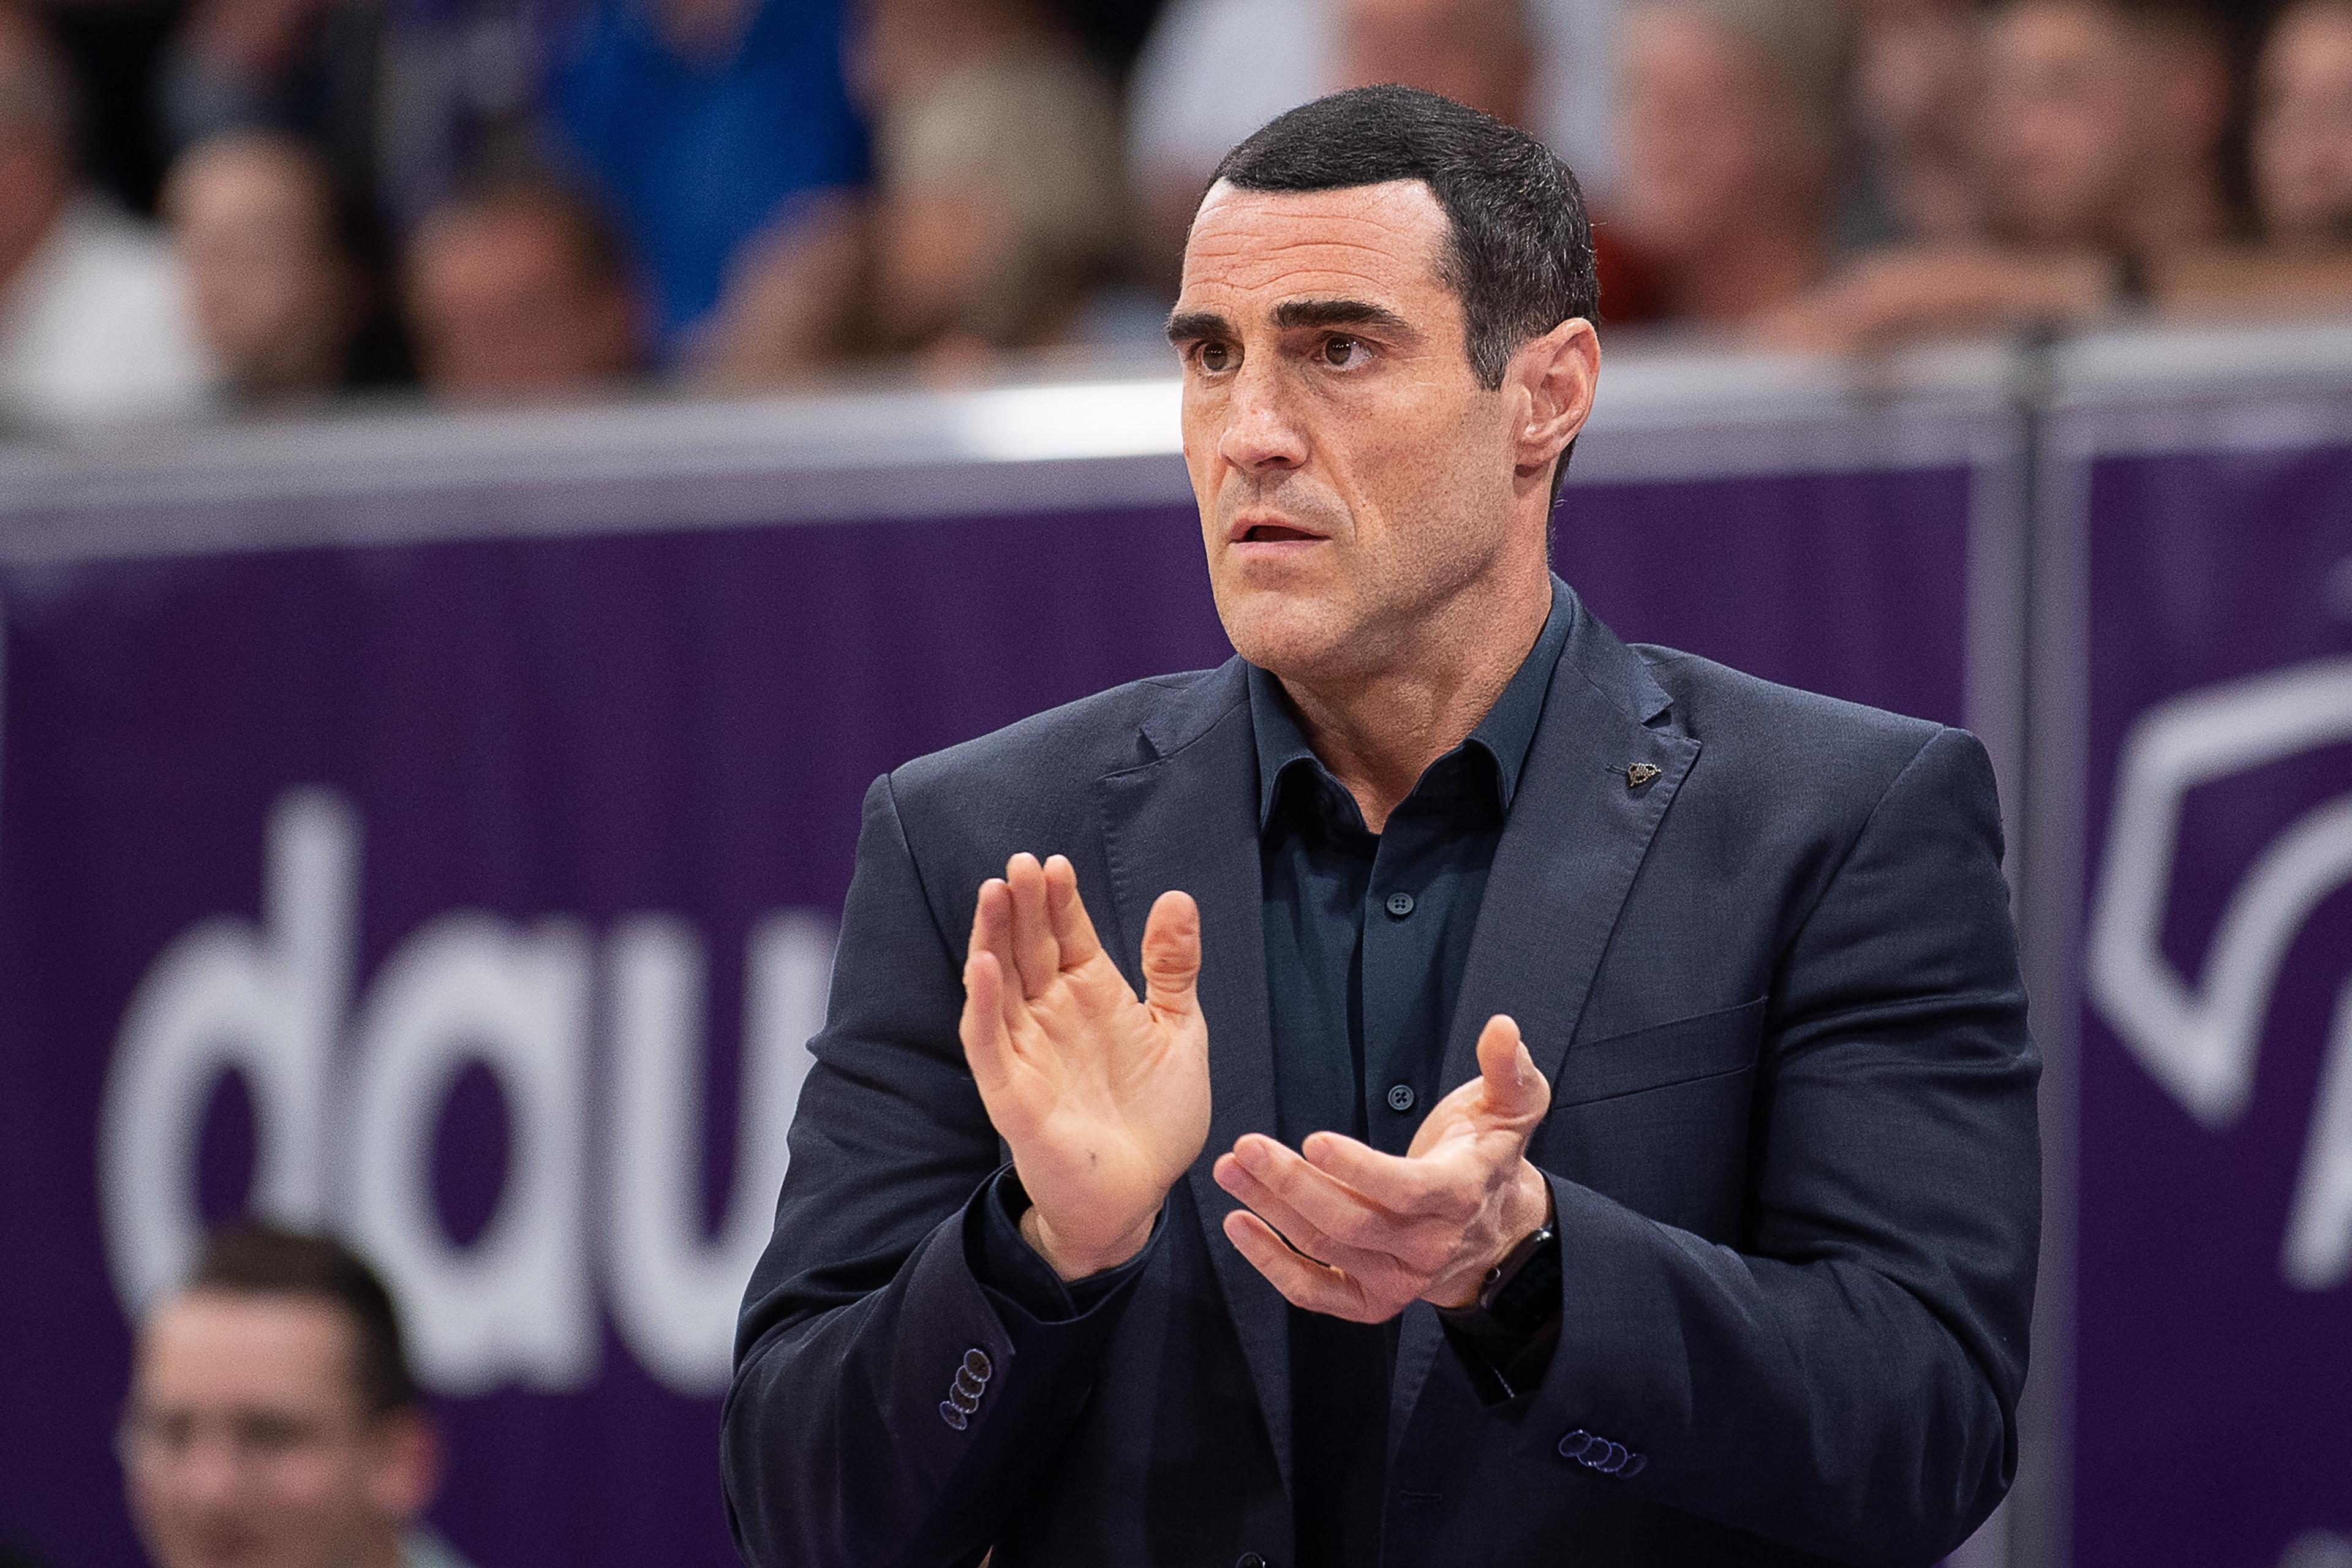 Die Telekom Baskets Bonn haben Roel Moors als neuen Cheftrainer verpflichtet. Der 44-jährige Belgier war zuletzt von 2020 bis 2023 für BG Göttingen tätig und führte die Niedersachsen in der abgelaufenen Saison 2022/2023 trotz eines verhältnismäßig kleinen Budgets überraschend bis ins Viertelfinale der easyCredit Basketball Bundesliga (BBL).